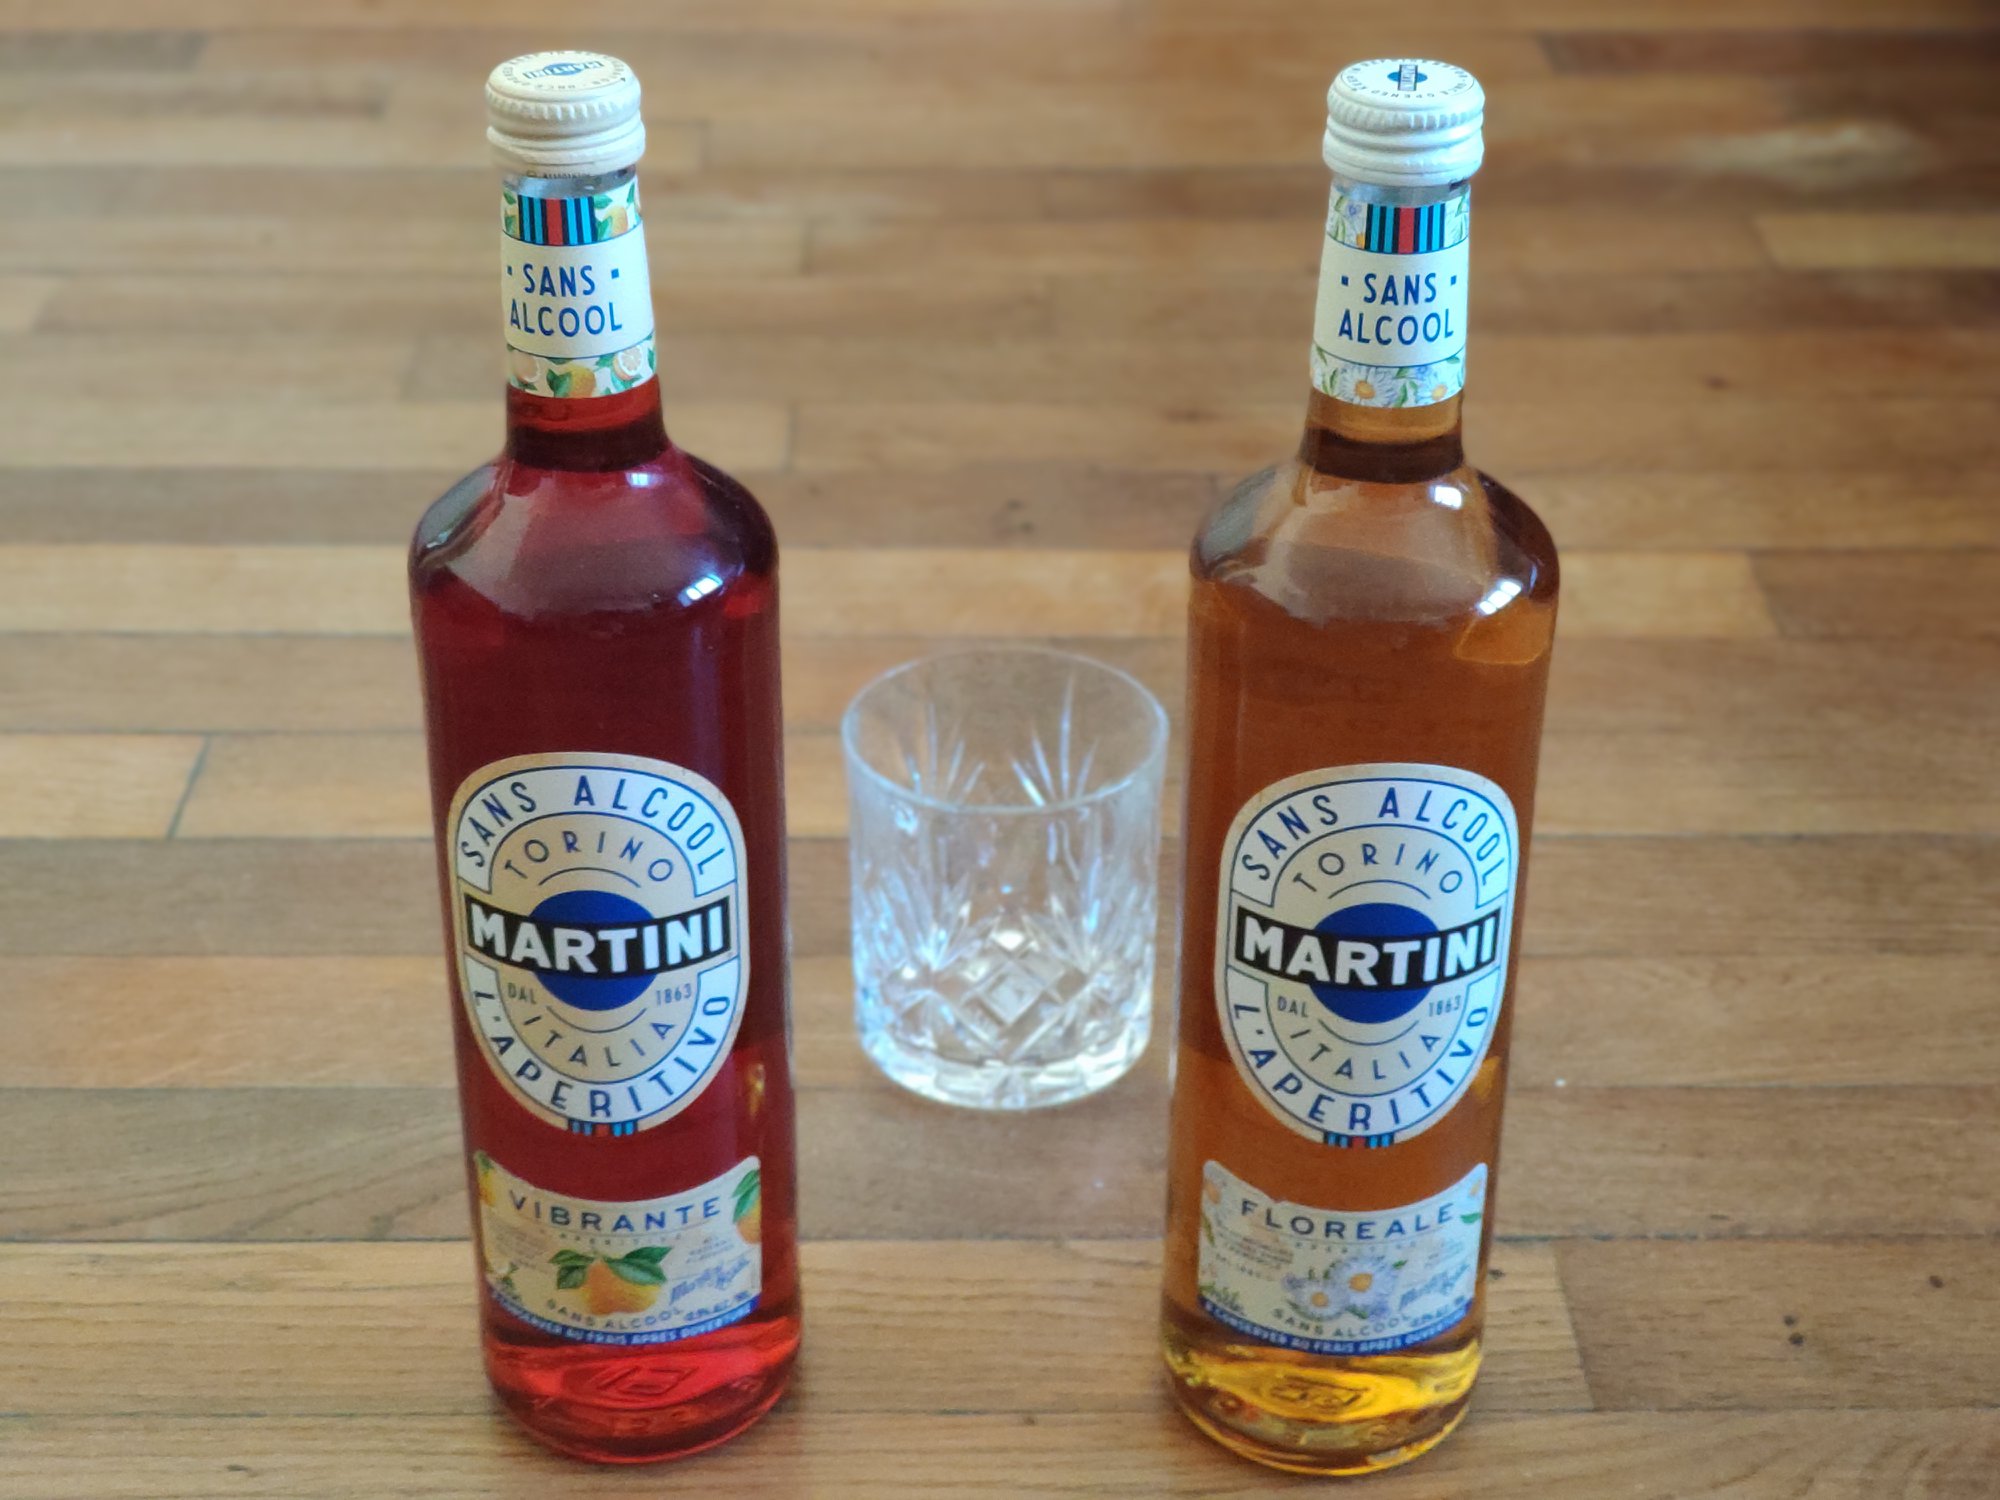 Martini - Aperitivo sans alcool - Floreale - Vibrante